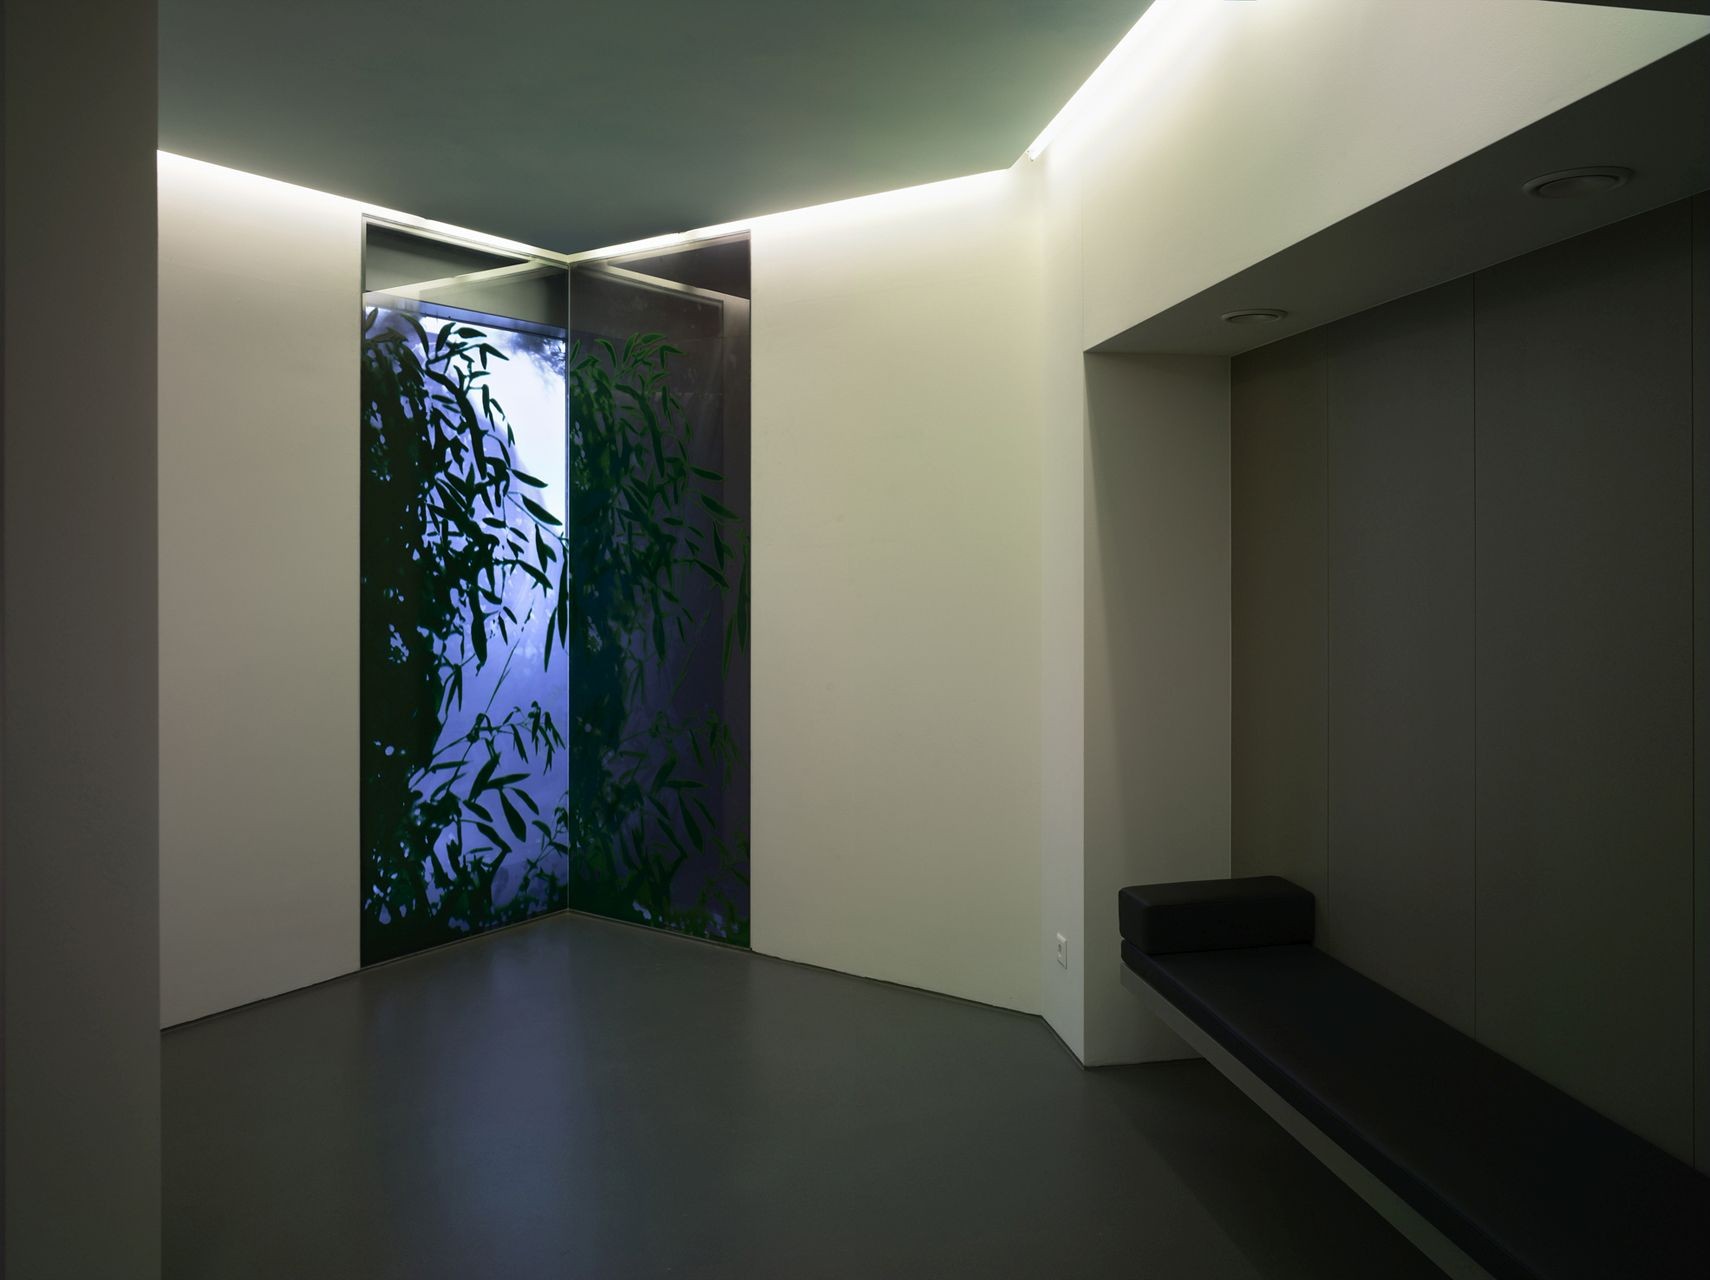 Indirekt beleuchteter Raum mit Glastür im Hintergrund, welches ein Pflanzenbild (Bambus) zeigt